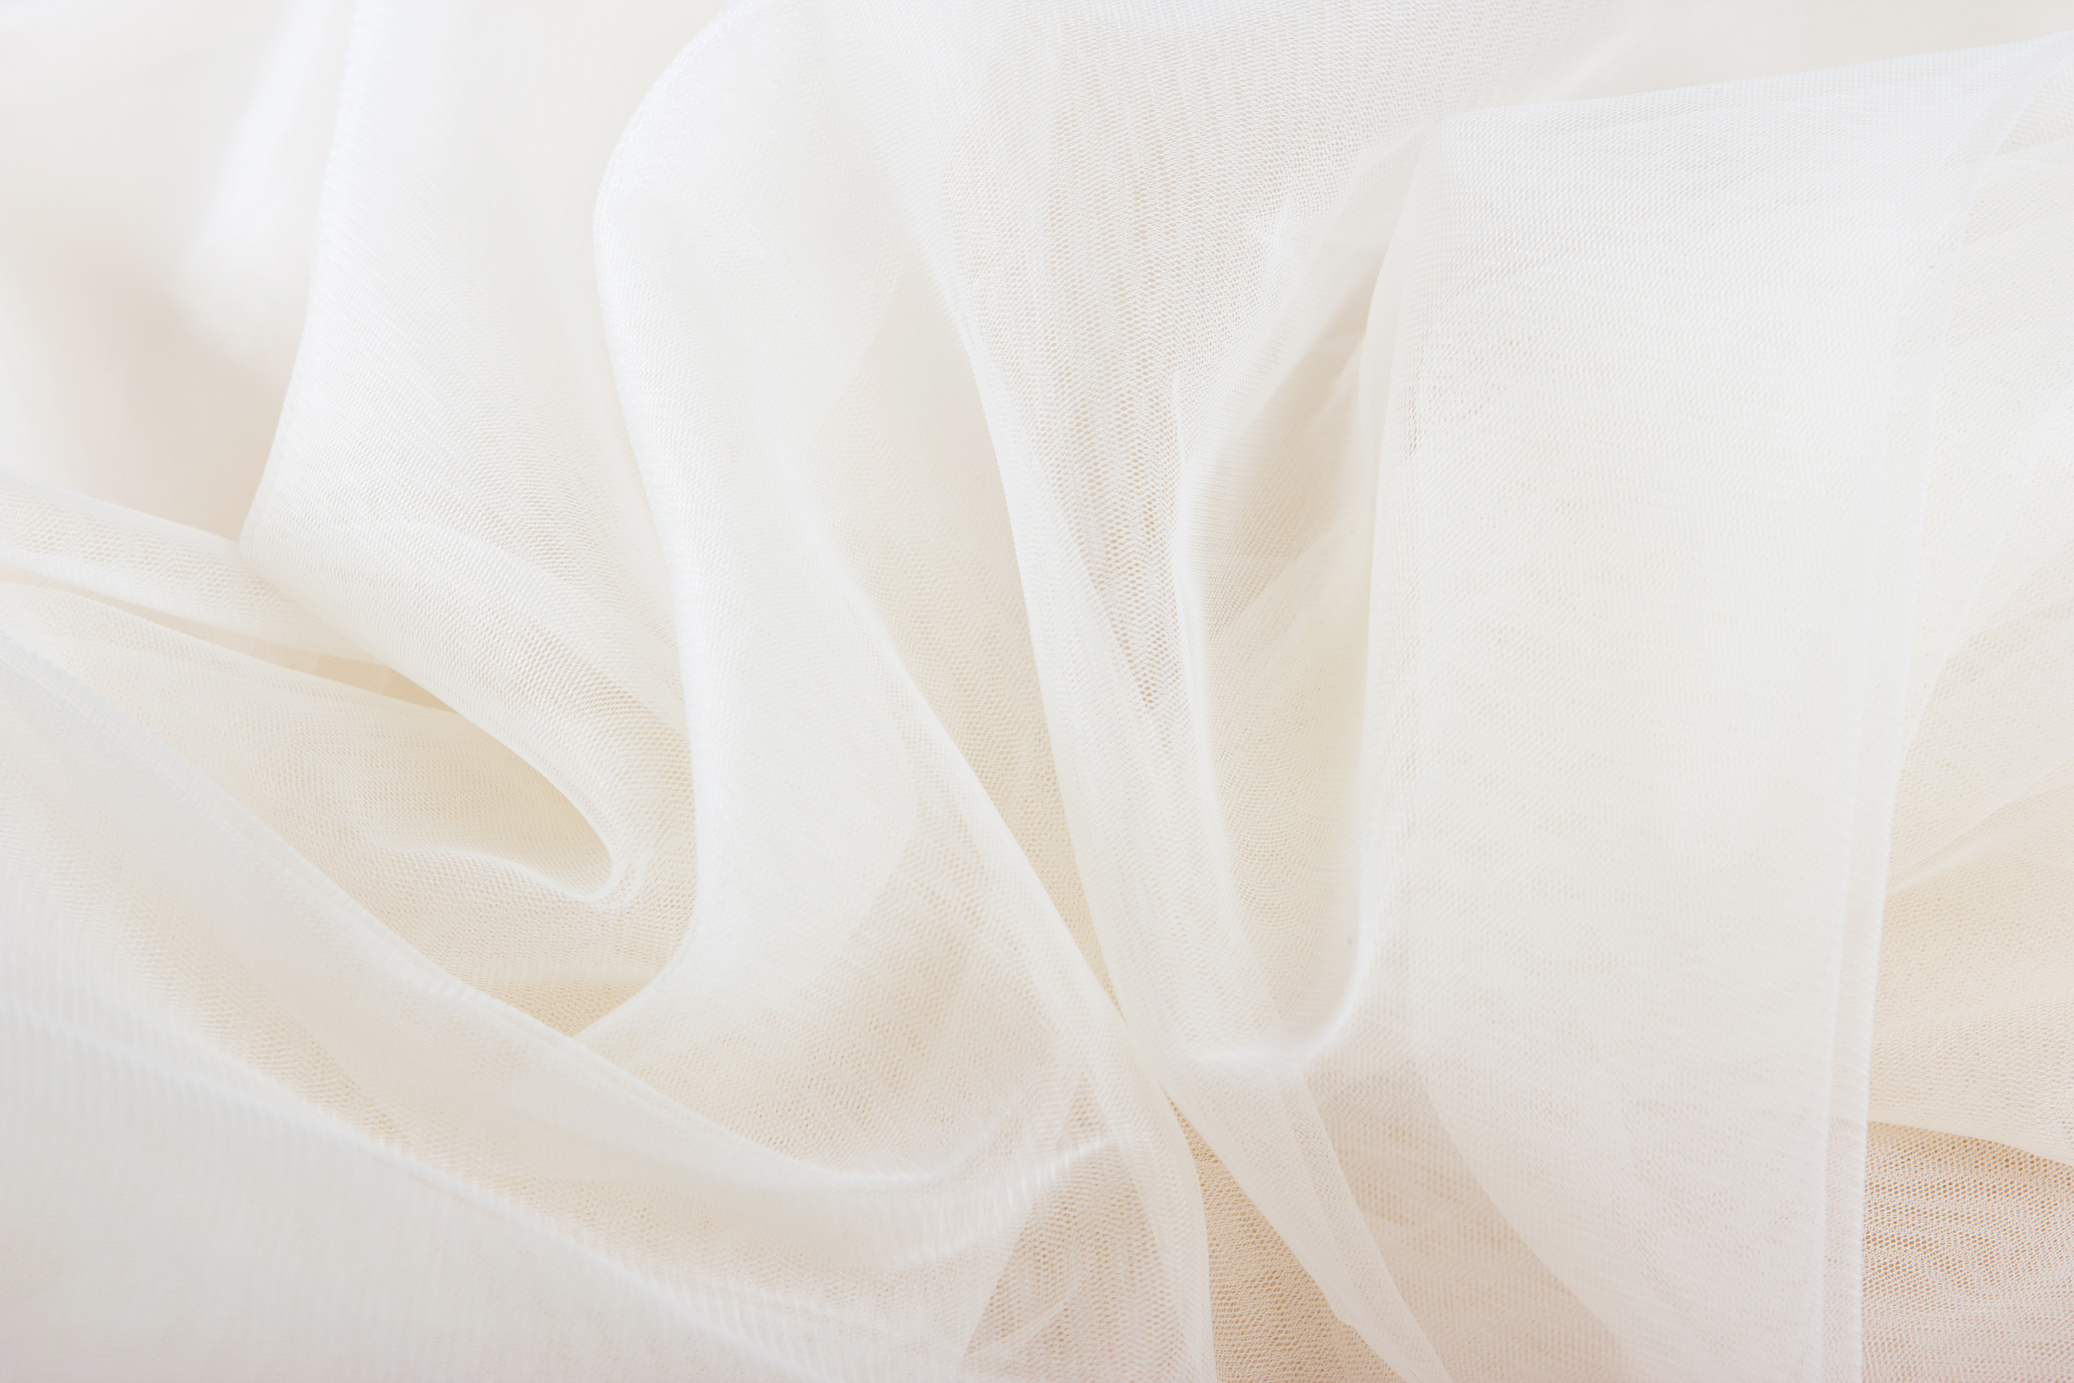 Chiffon Fabric Background Texture